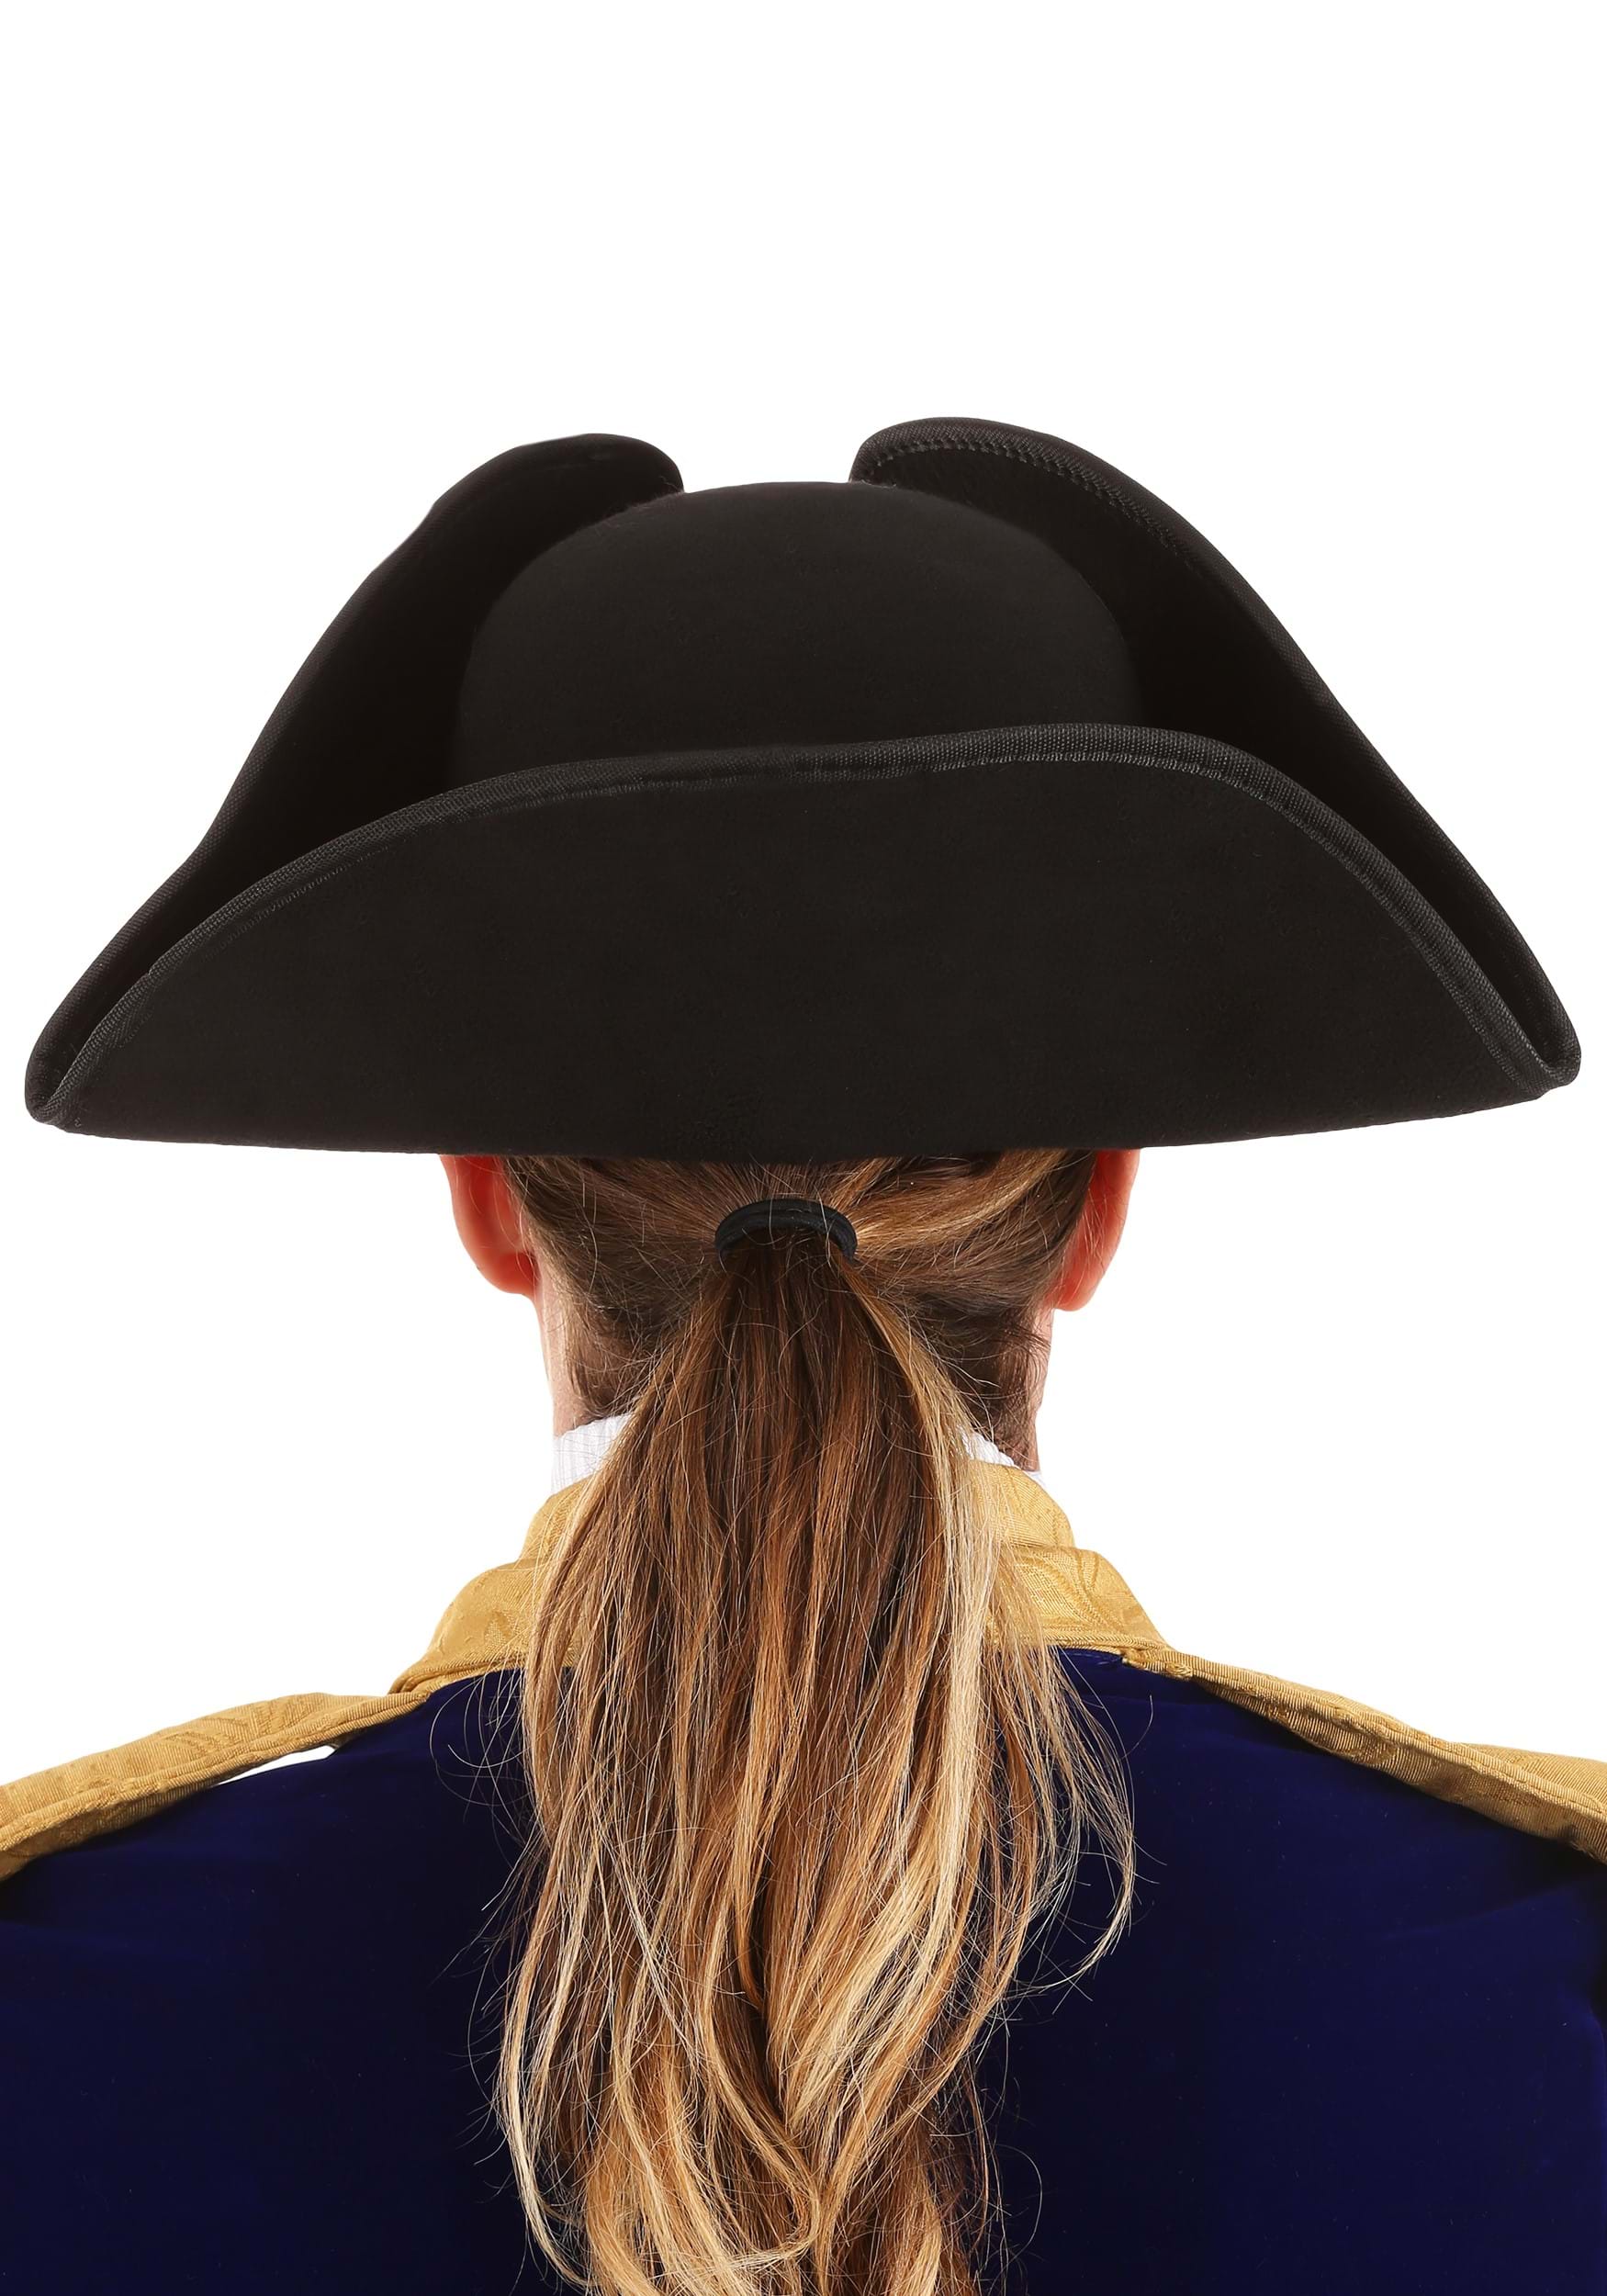 George Washington Adult Costume Hat